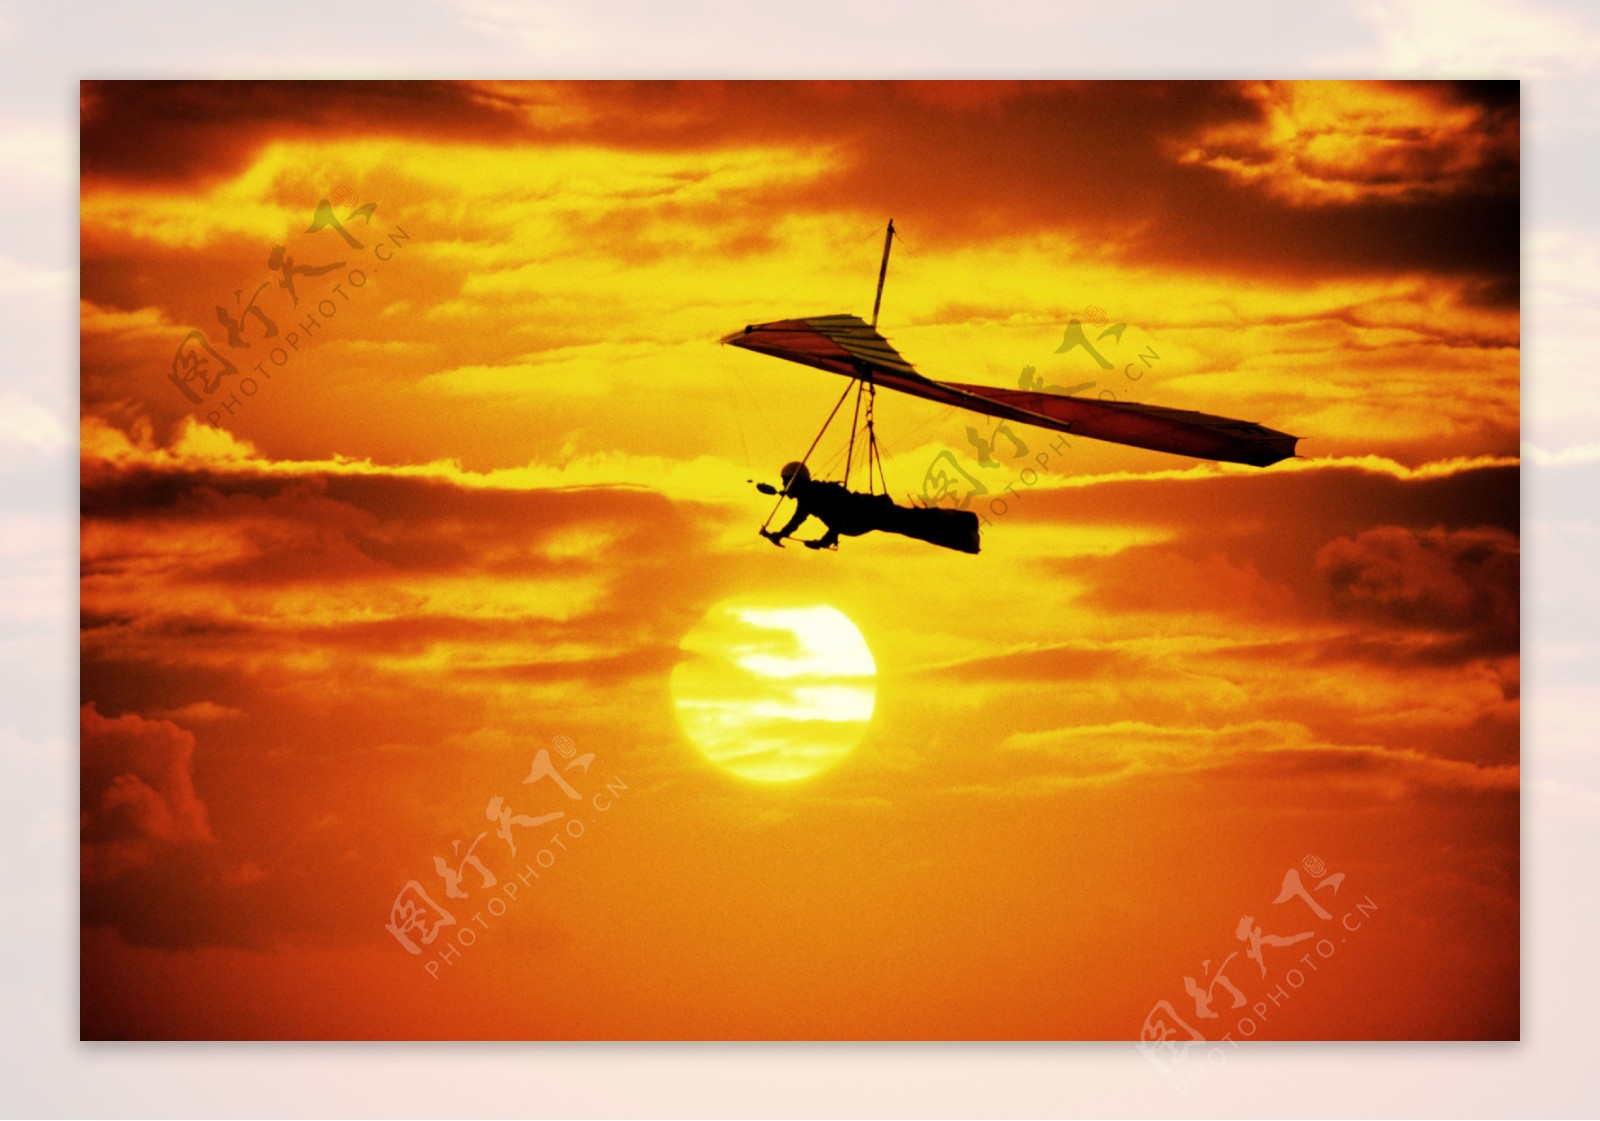 滑翔伞运动图片